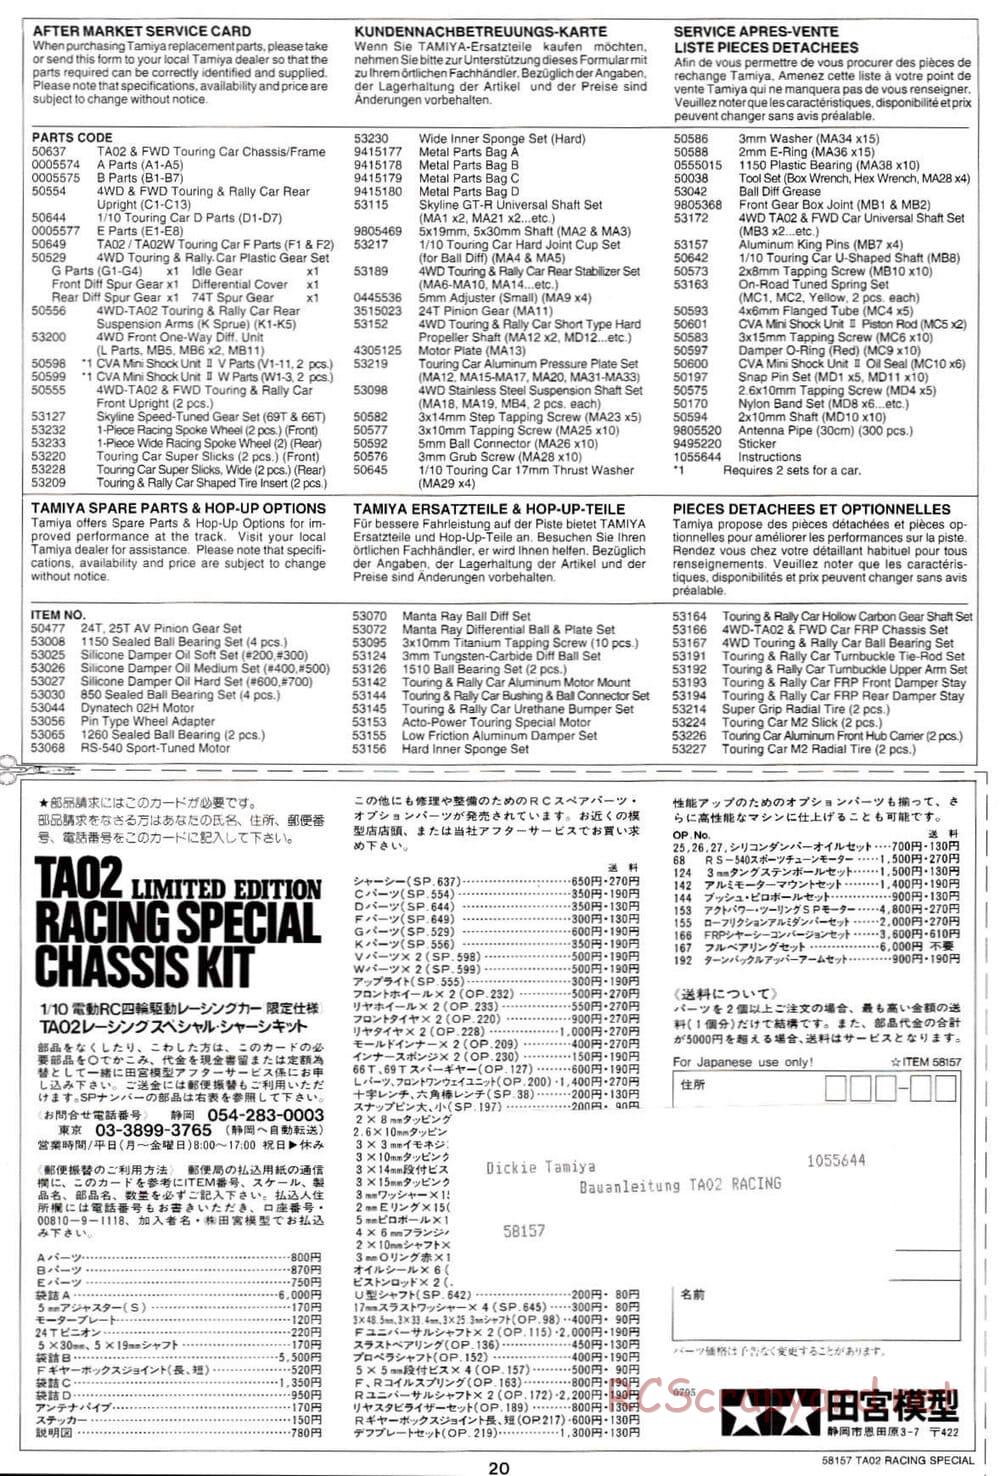 Tamiya - TA-02RS Chassis - Manual - Page 20